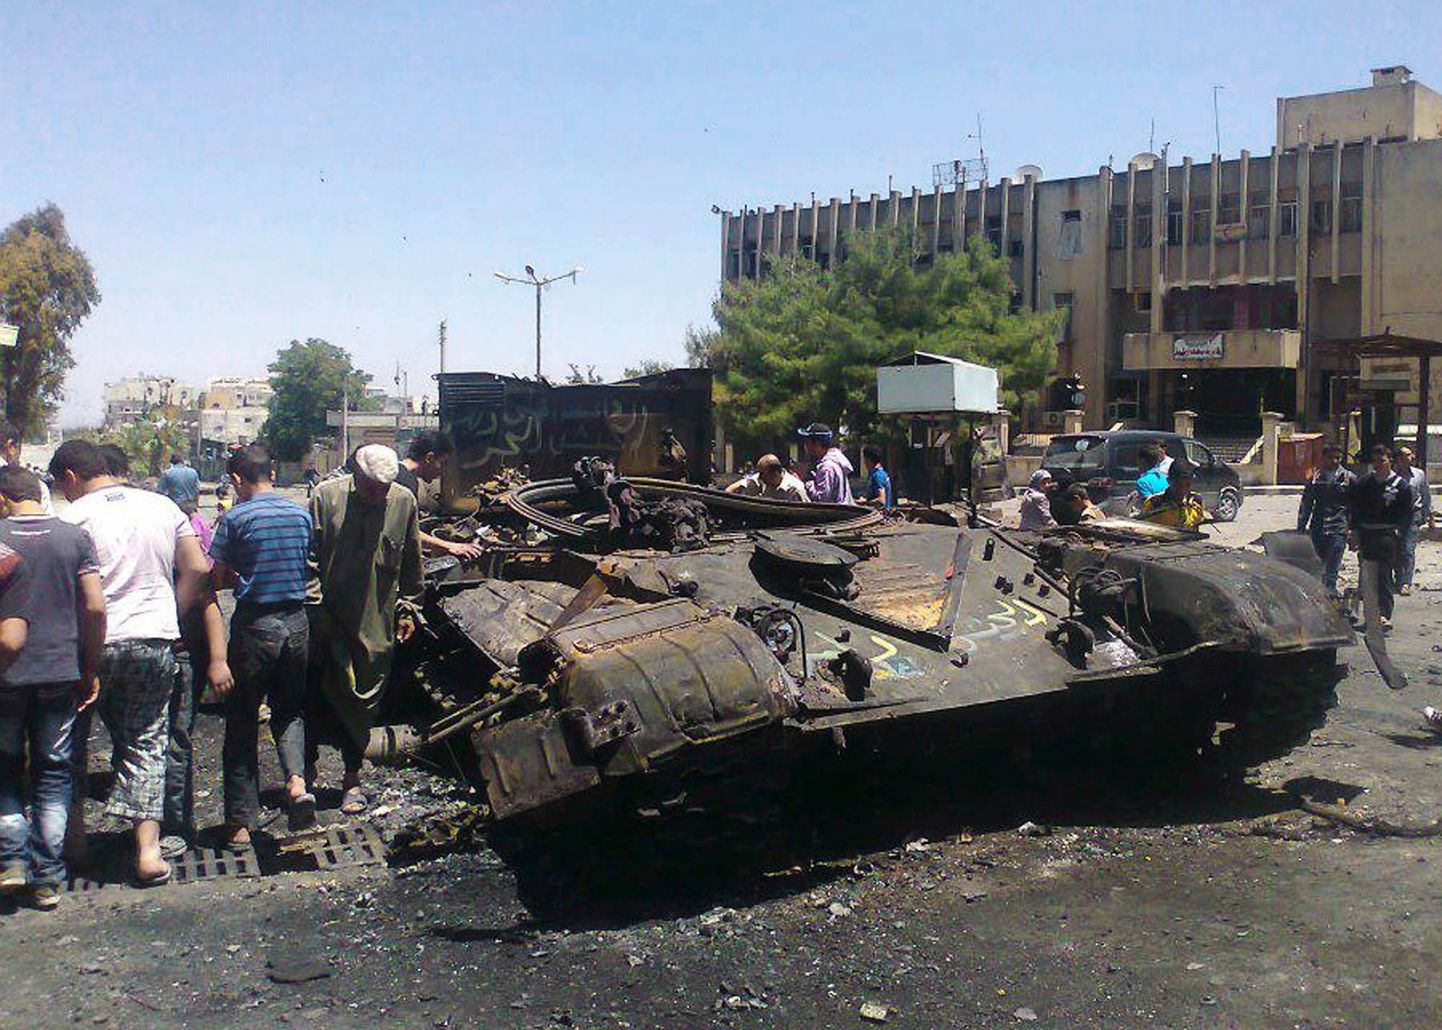 Сгоревший танк сирийской армии в одном из городов Сирии.